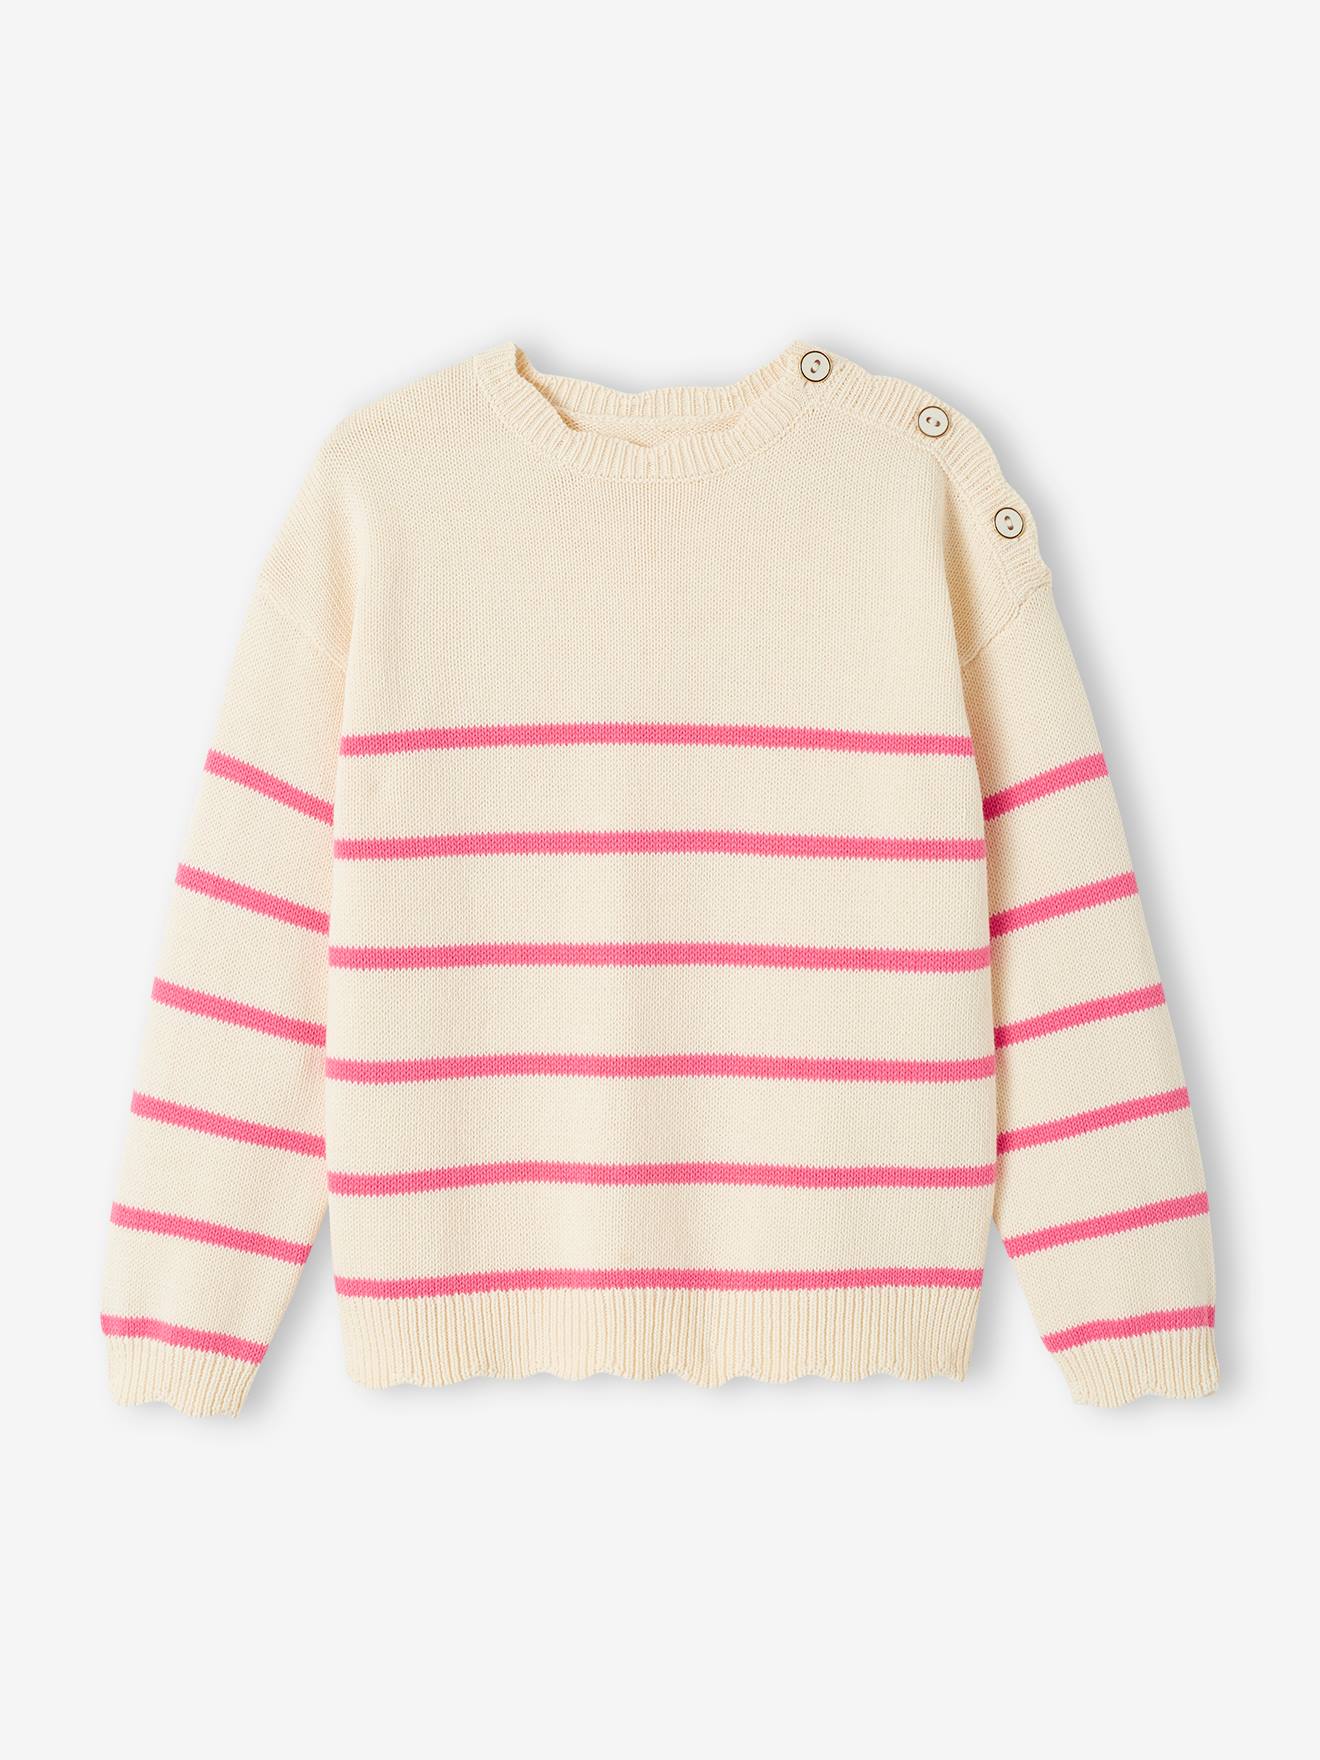 Fancy Striped Jumper for Girls sweet pink